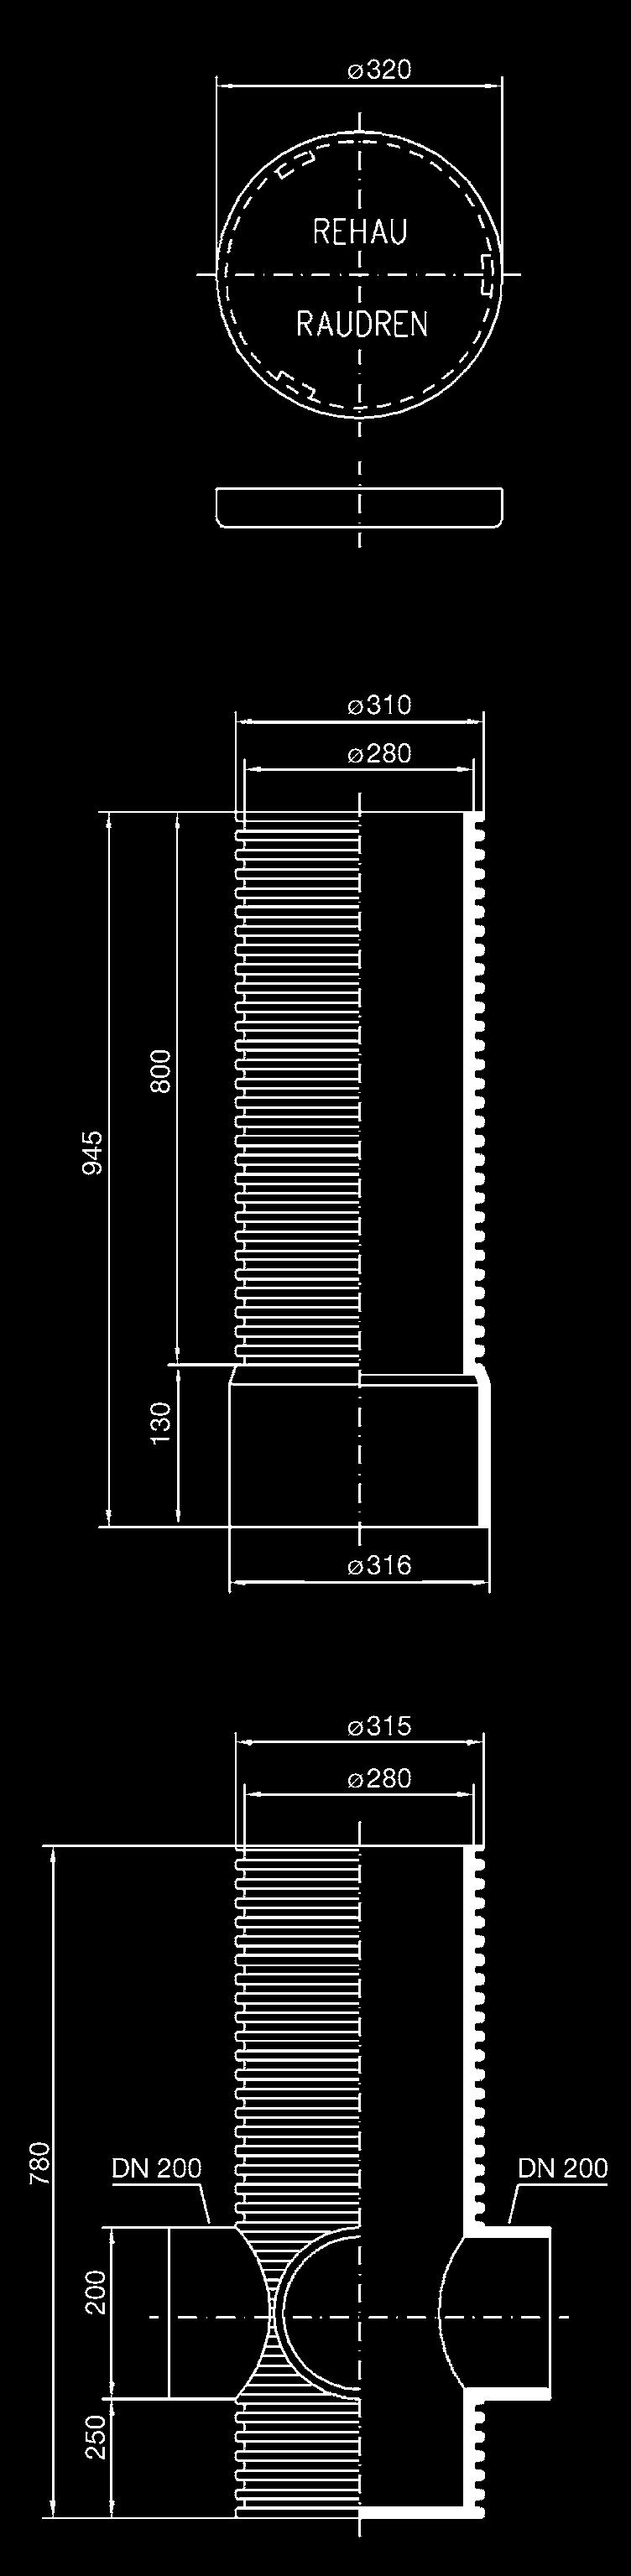 REHAU RAUDREN akna DN 315 Aknafedél (járható) Tisztító-, ellenôrzô- és gyûjtôakna PP alapanyagból, DN 315 névleges átmérôvel és 3 sima belsô falú DN 200 90 leágazással.